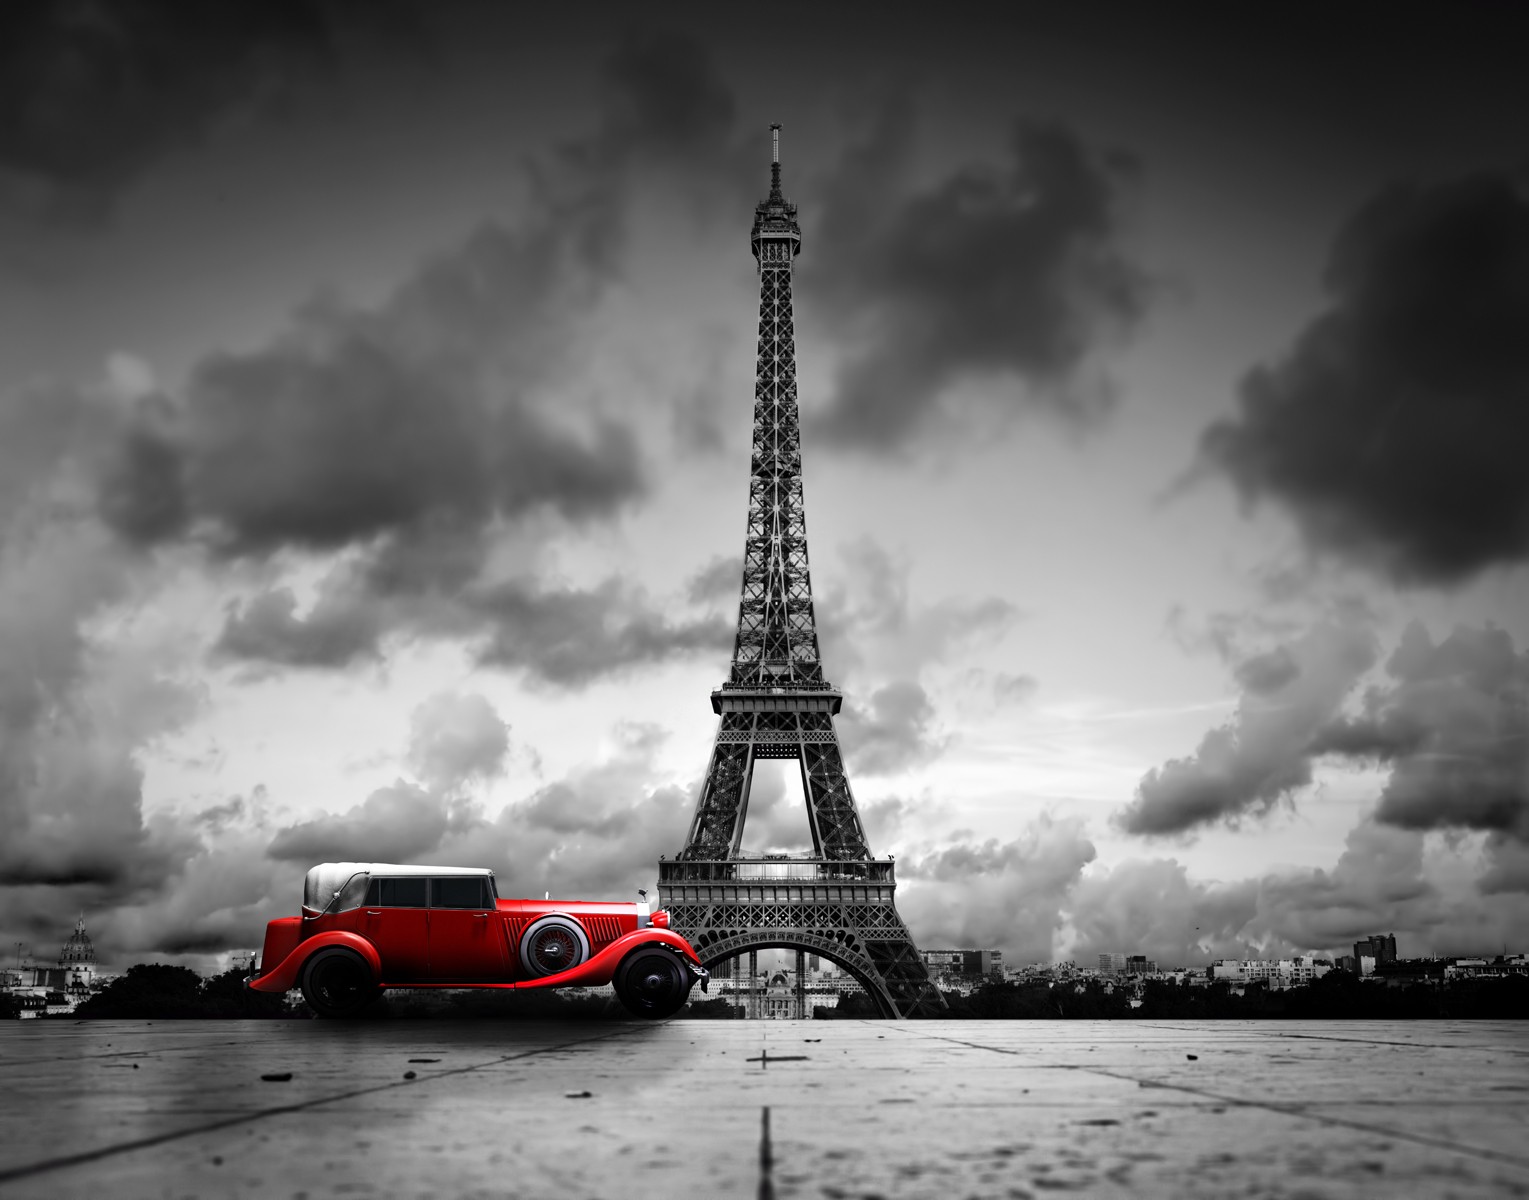 Ρόλερ Ολικής Συσκότισης/Blackout CI0011 Πόλη-Παρίσι Πύργος του Άιφελ, κλασικό κόκκινο αυτοκίνητο